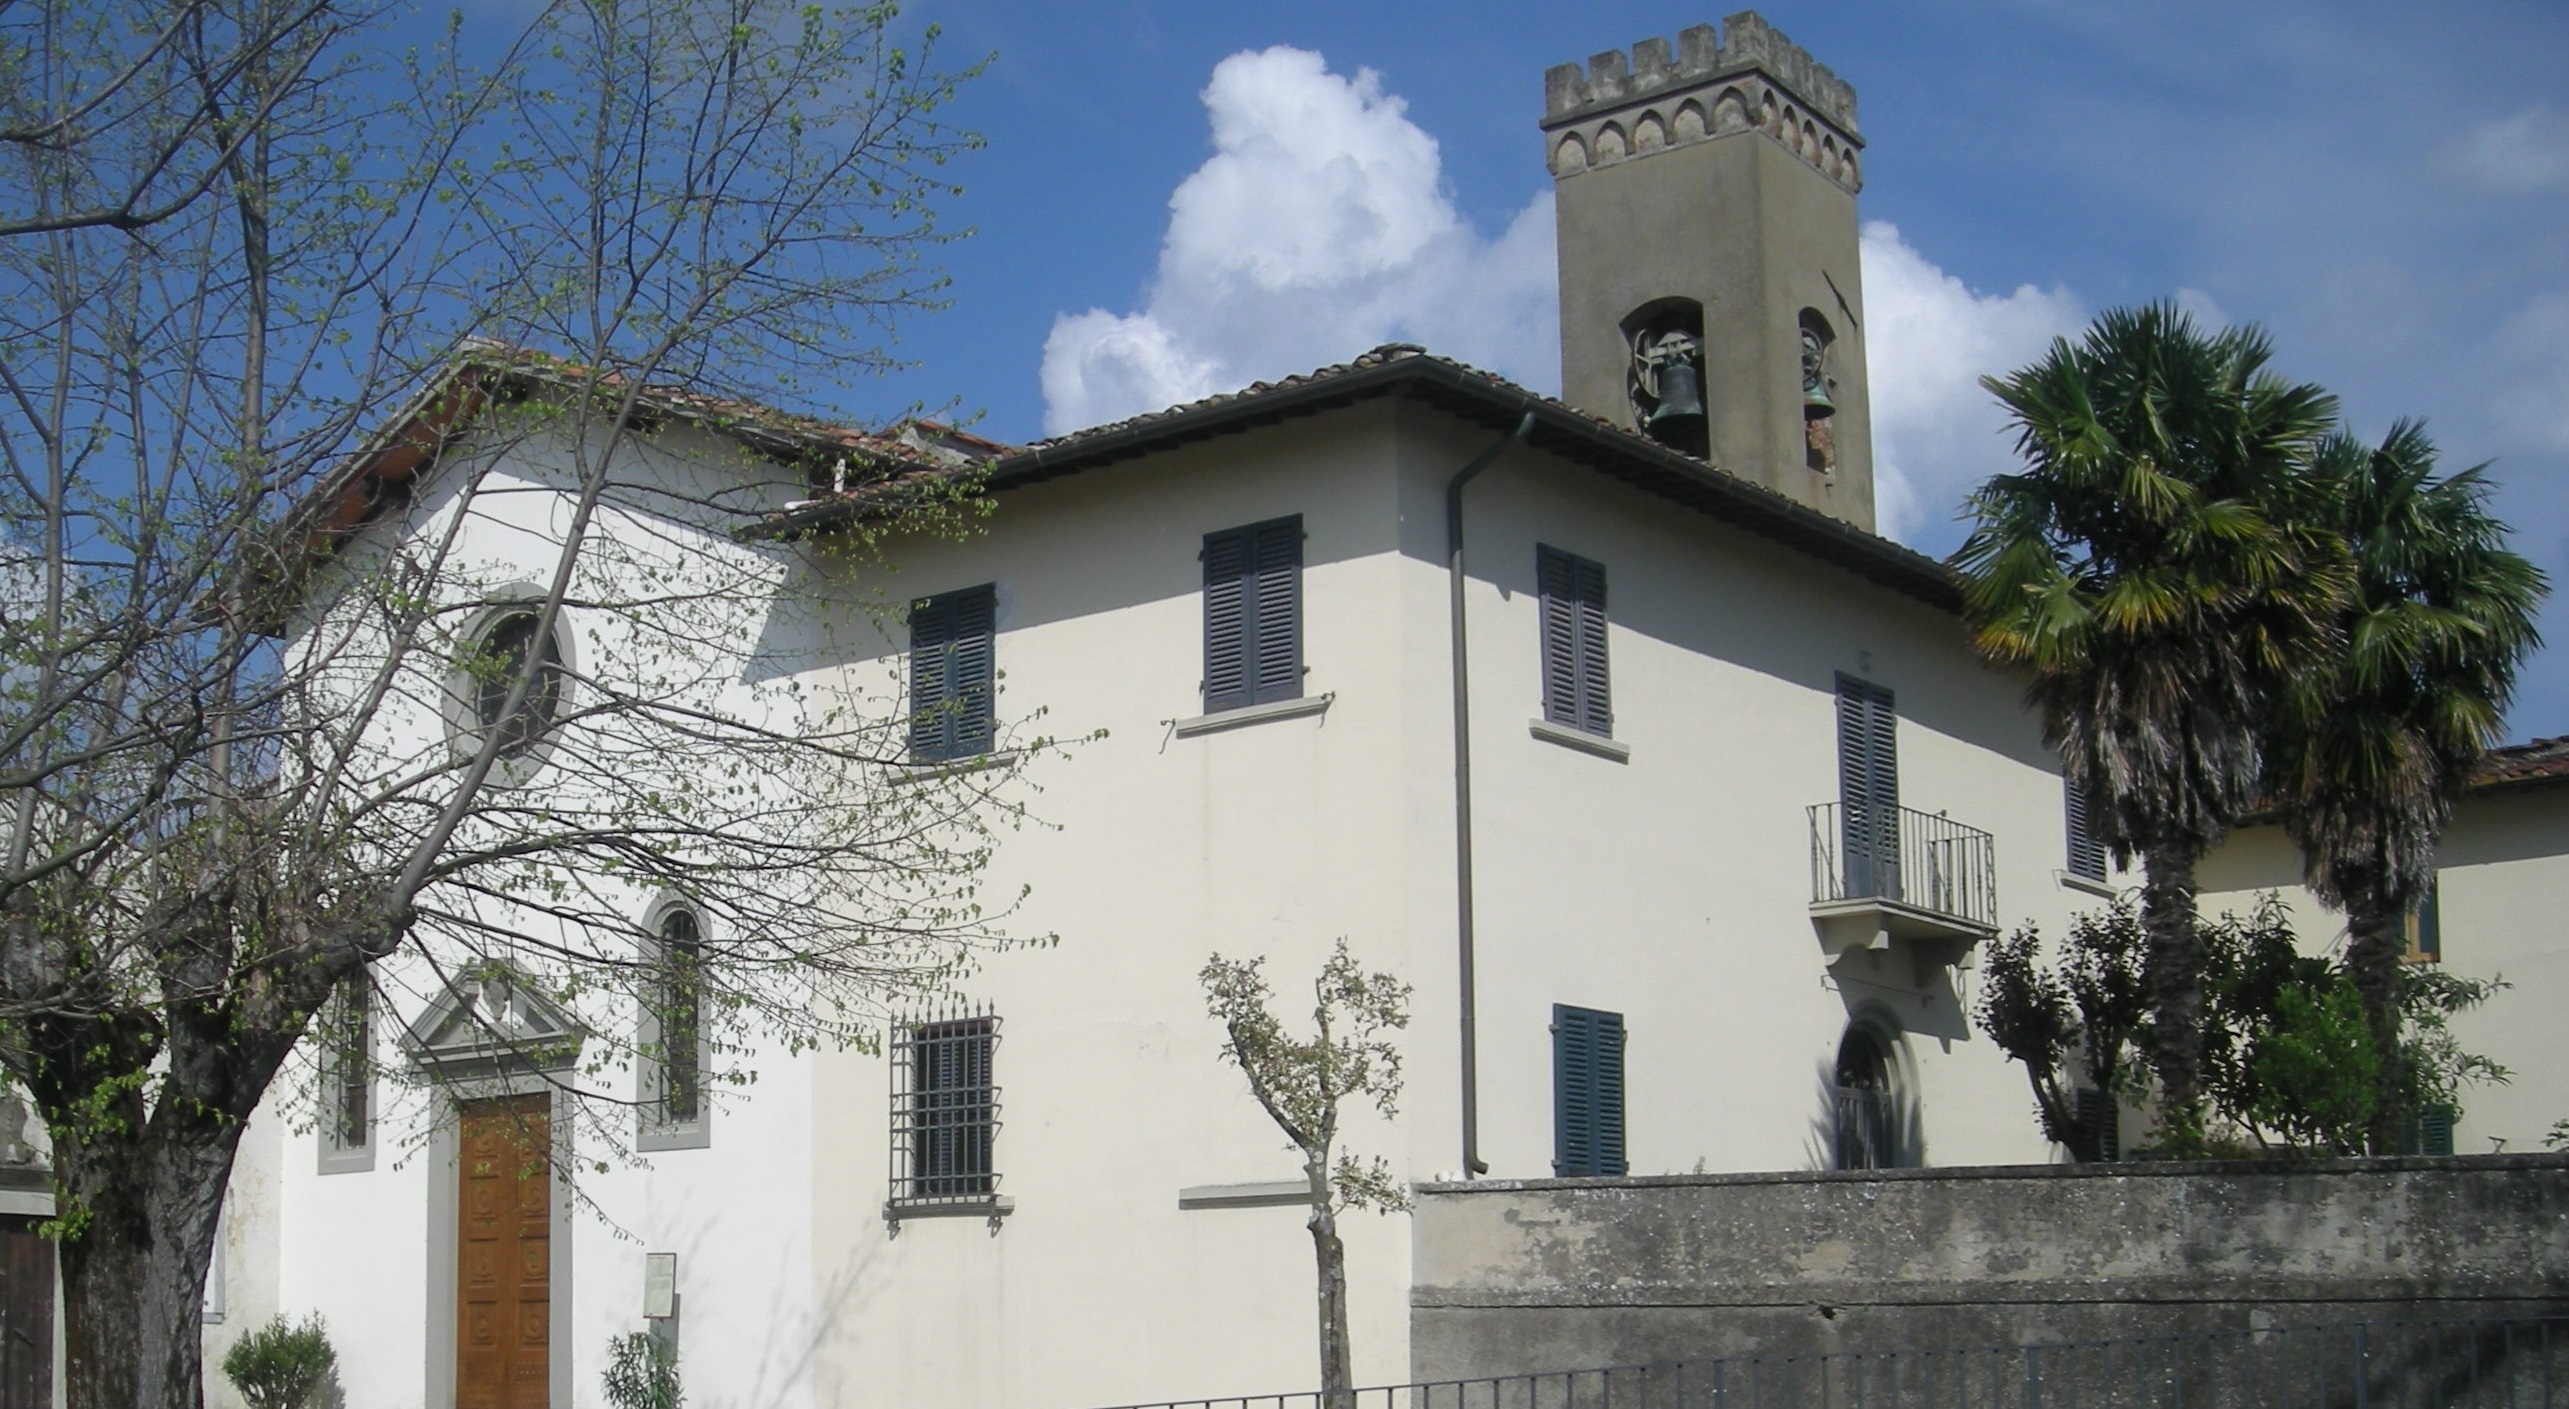 Chiesa di San Miniato - Foto Pro-Loco Signa